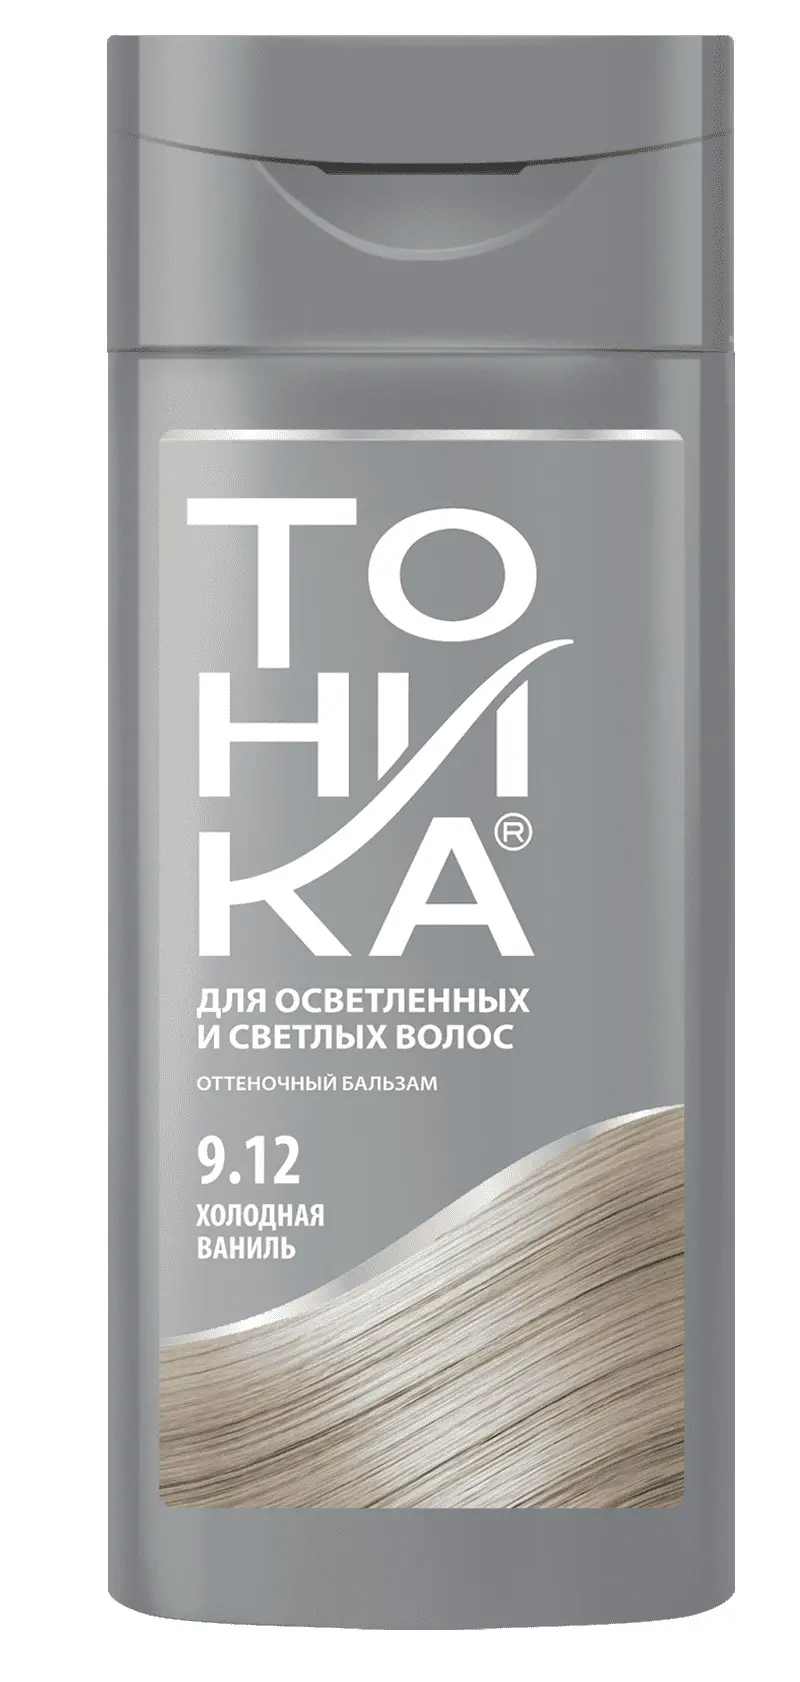 Оттеночный бальзам для волос 9.12 холодная ваниль Тоника